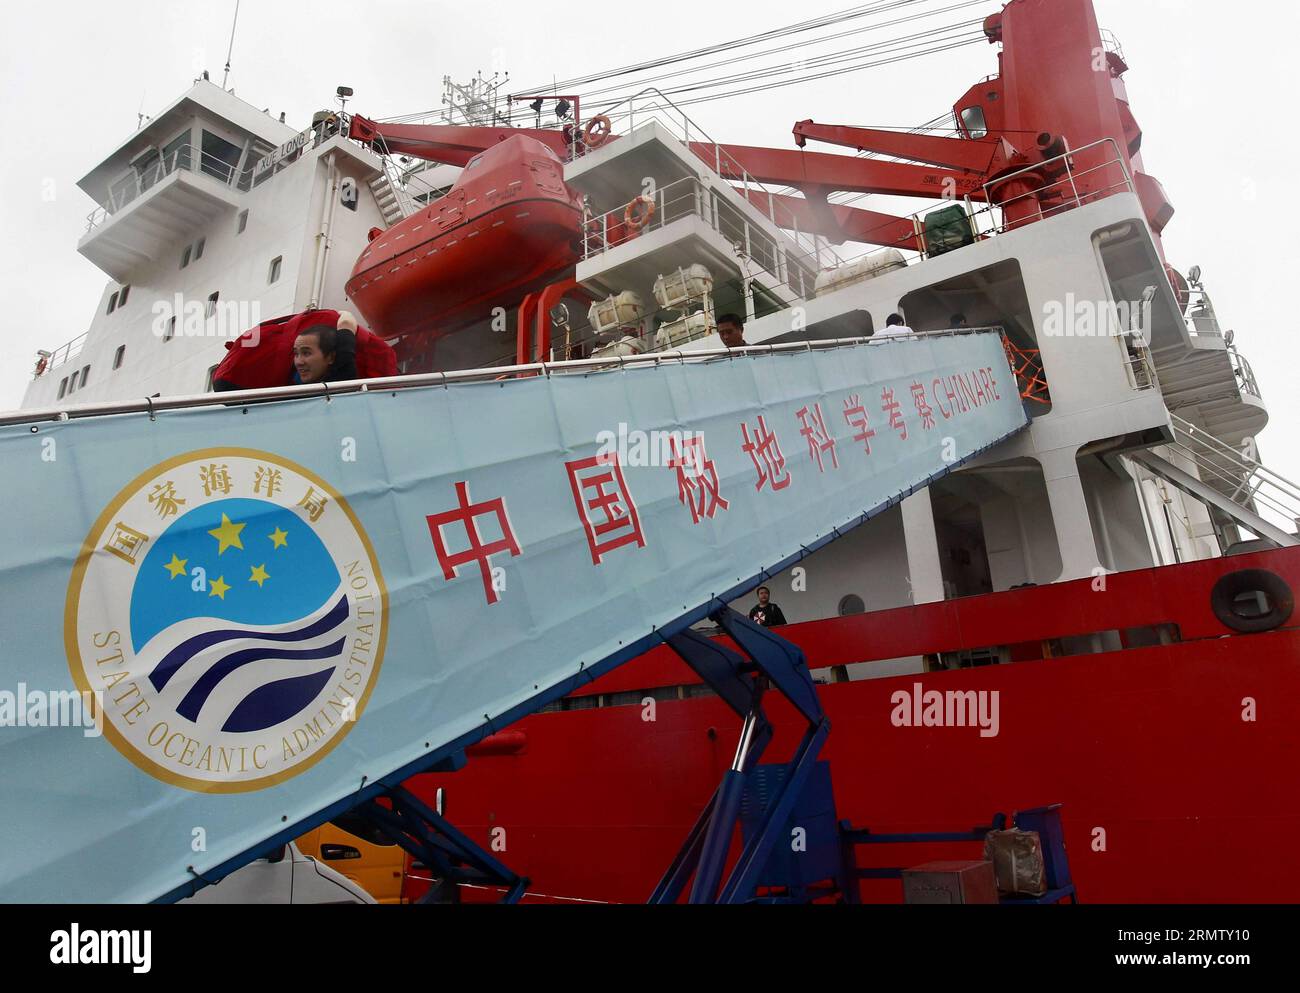 (140923) -- SHANGHAI, le 23 septembre 2014 -- des membres du personnel transportent des sacs du brise-glace Xuelong, ou Dragon des neiges, au port de Shanghai, dans l'est de la Chine, le 23 septembre 2014. Xuelong est parti de Shanghai le 11 juillet et a depuis parcouru quelque 22 000 km pour explorer des zones clés telles que la mer de Béring, la mer de Tchoukchi et le bassin du Canada. Il a voyagé aussi loin que 81,11 degrés de latitude nord et 156,30 degrés de longitude est, a dit l'équipe.) (lfj) CHINA-SHANGHAI-ICEBREAKER XUELONG-RETURN (CN) DingxTing PUBLICATIONxNOTxINxCHN Shanghai sept 23 2014 les membres du personnel transportent des sacs de Icebreaker XUELONG ou Snow Dr Banque D'Images